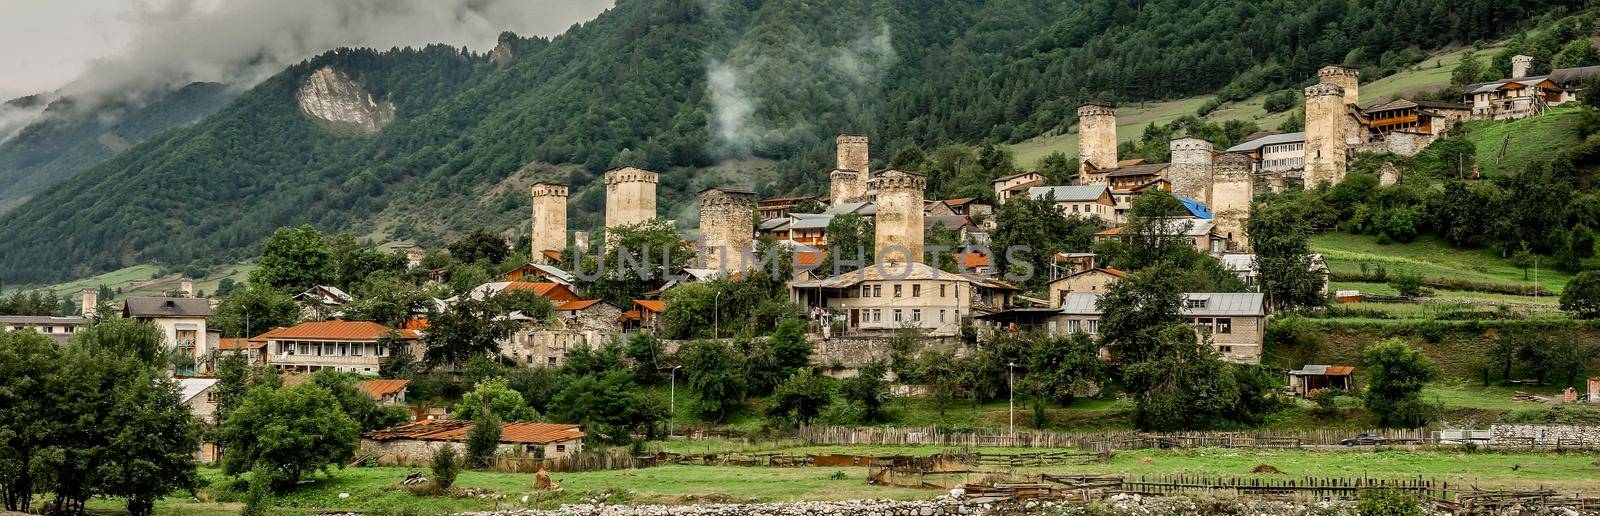 Panoramic view on Mestia village, Georgia by tan4ikk1